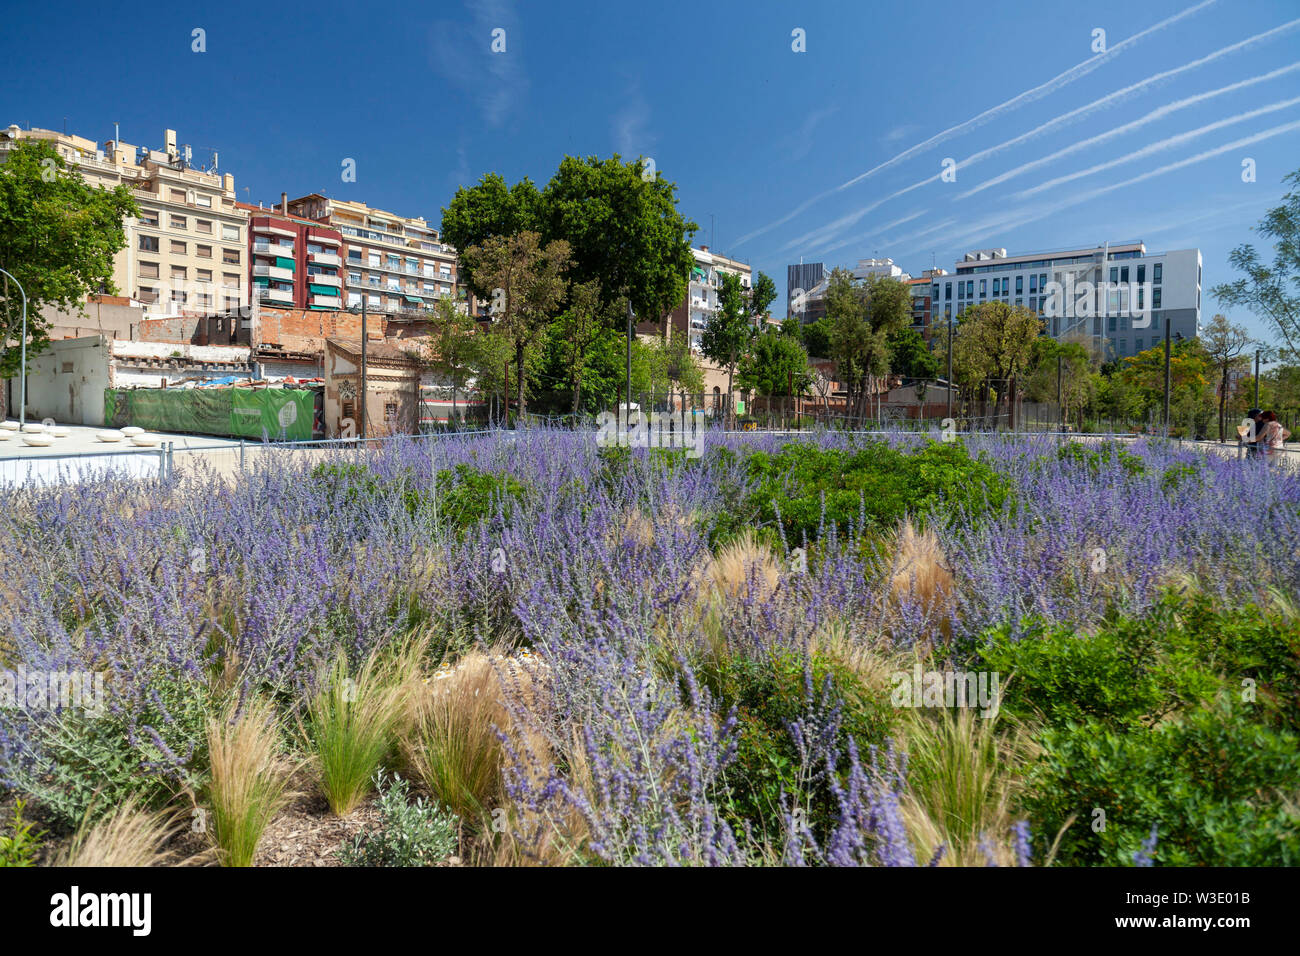 Public garden park, Parc de les Glories, Barcelona, Catalonia, Spain. Stock Photo